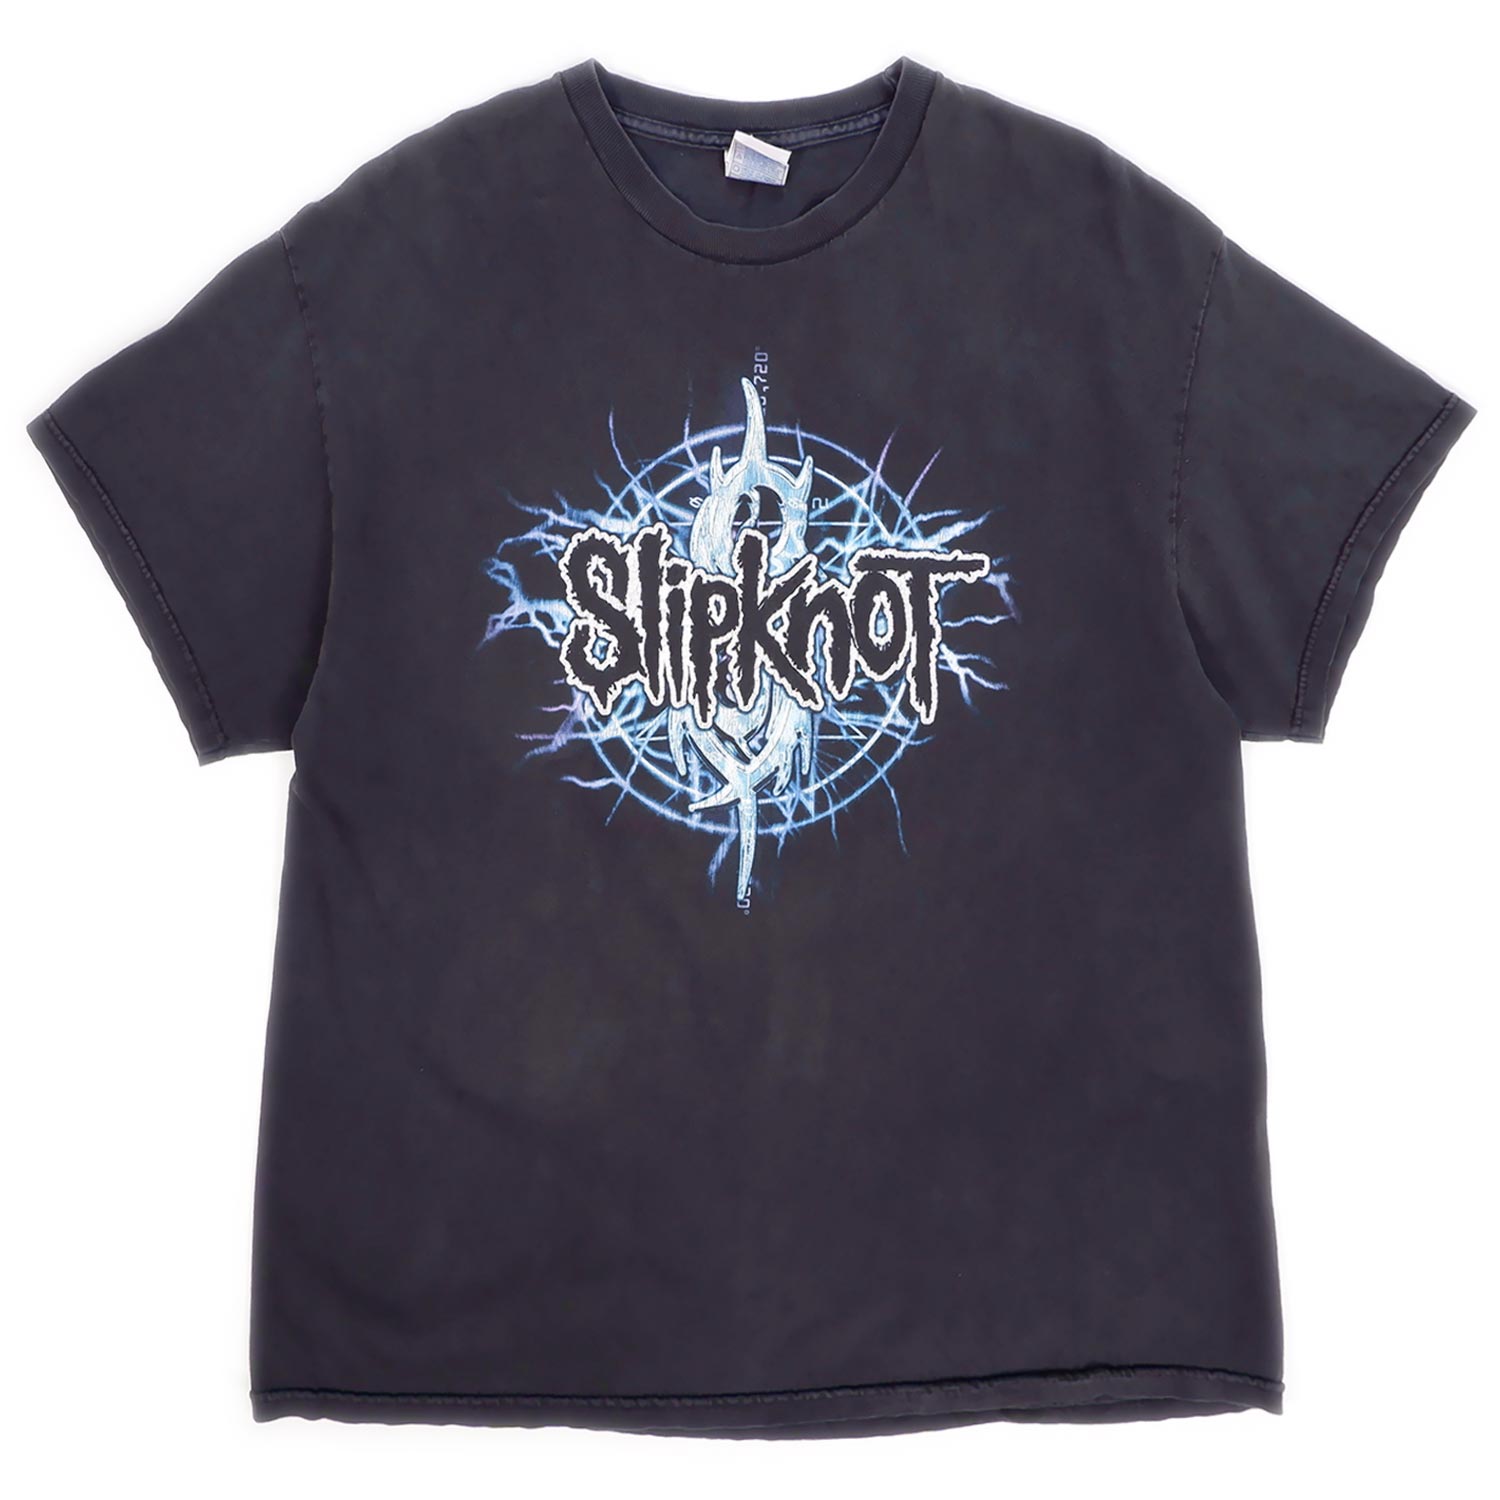 00's Slipknot バンドTシャツ